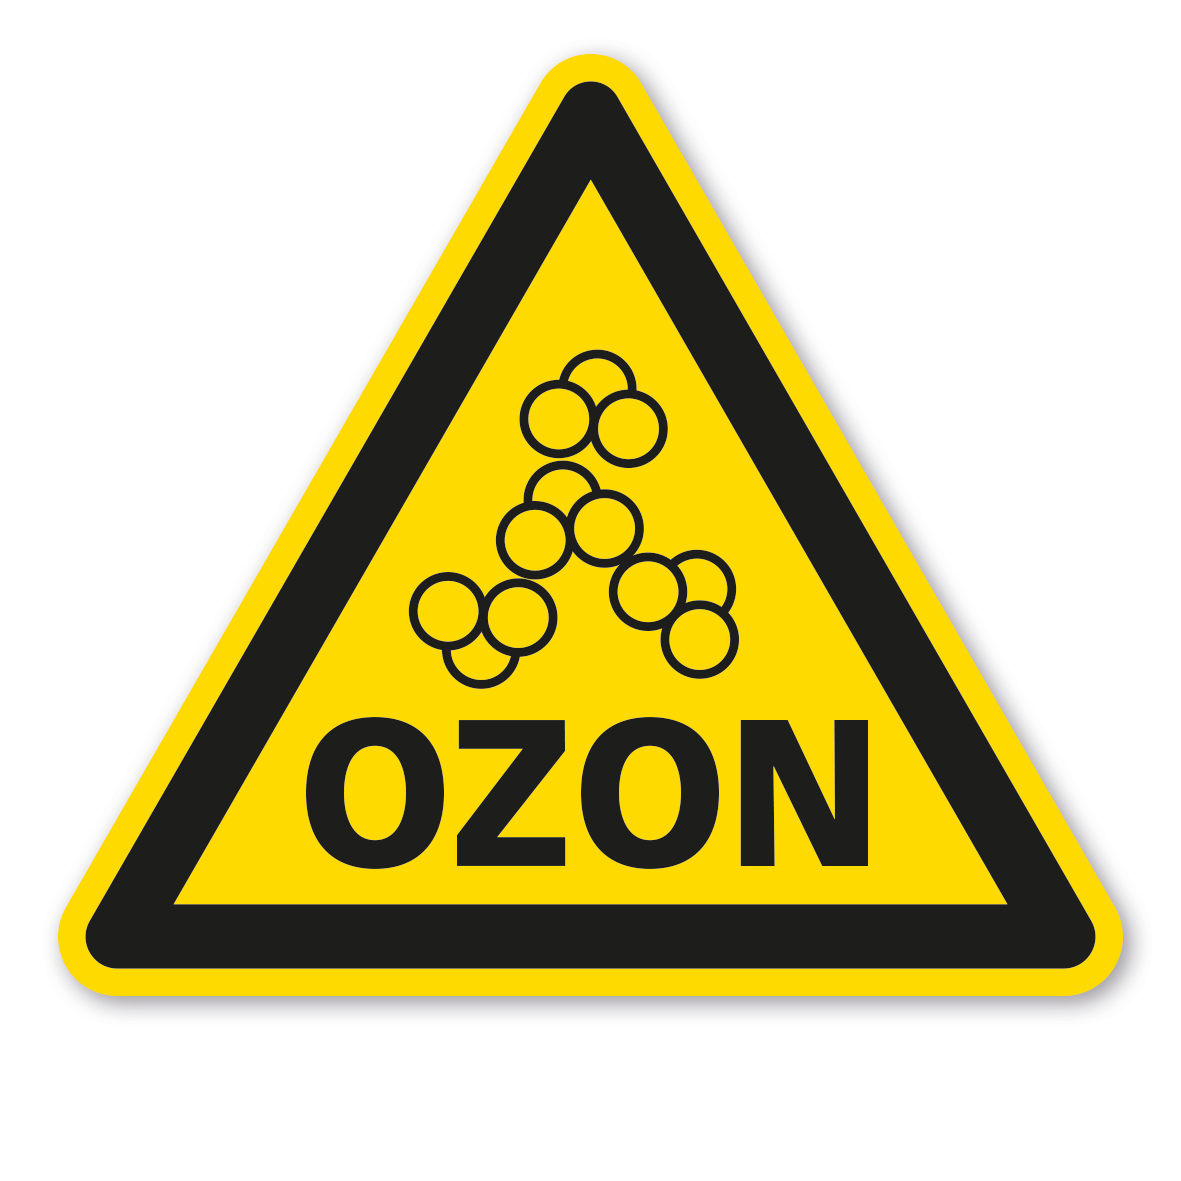 Озон мелкий шрифт